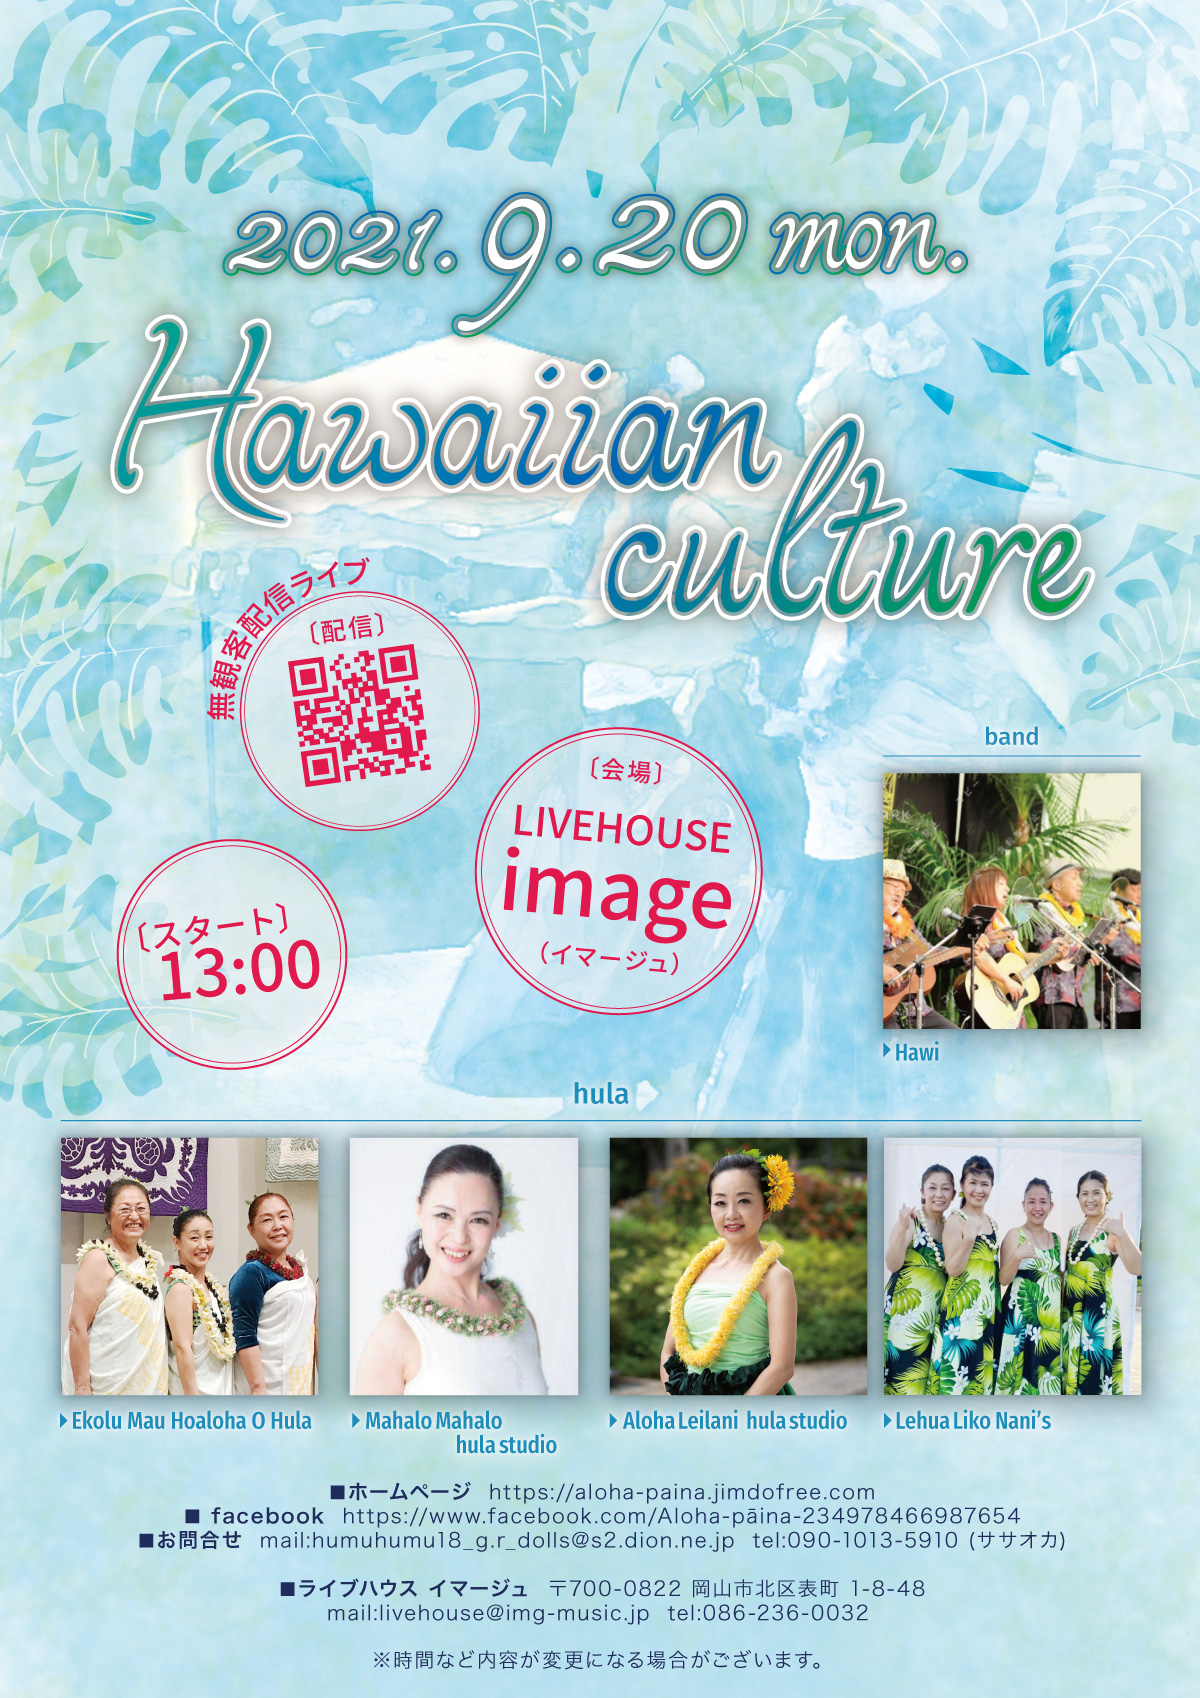 Hawaiian culture